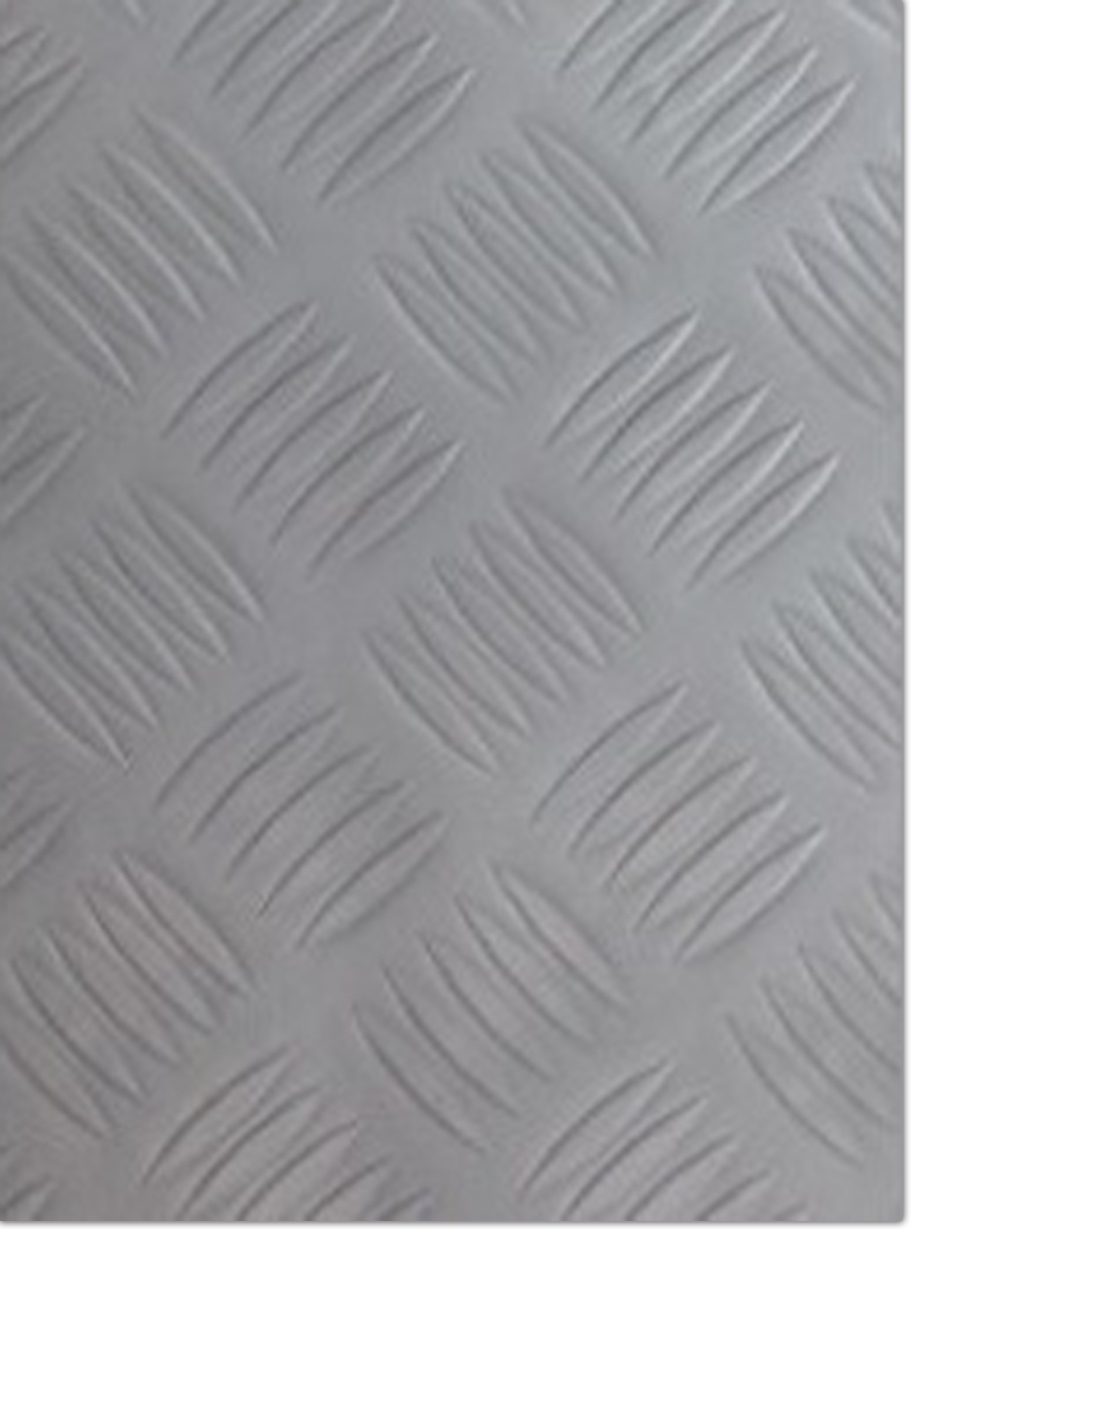 Rollo de suelo vinilico de PVC con diseño Checker de color gris